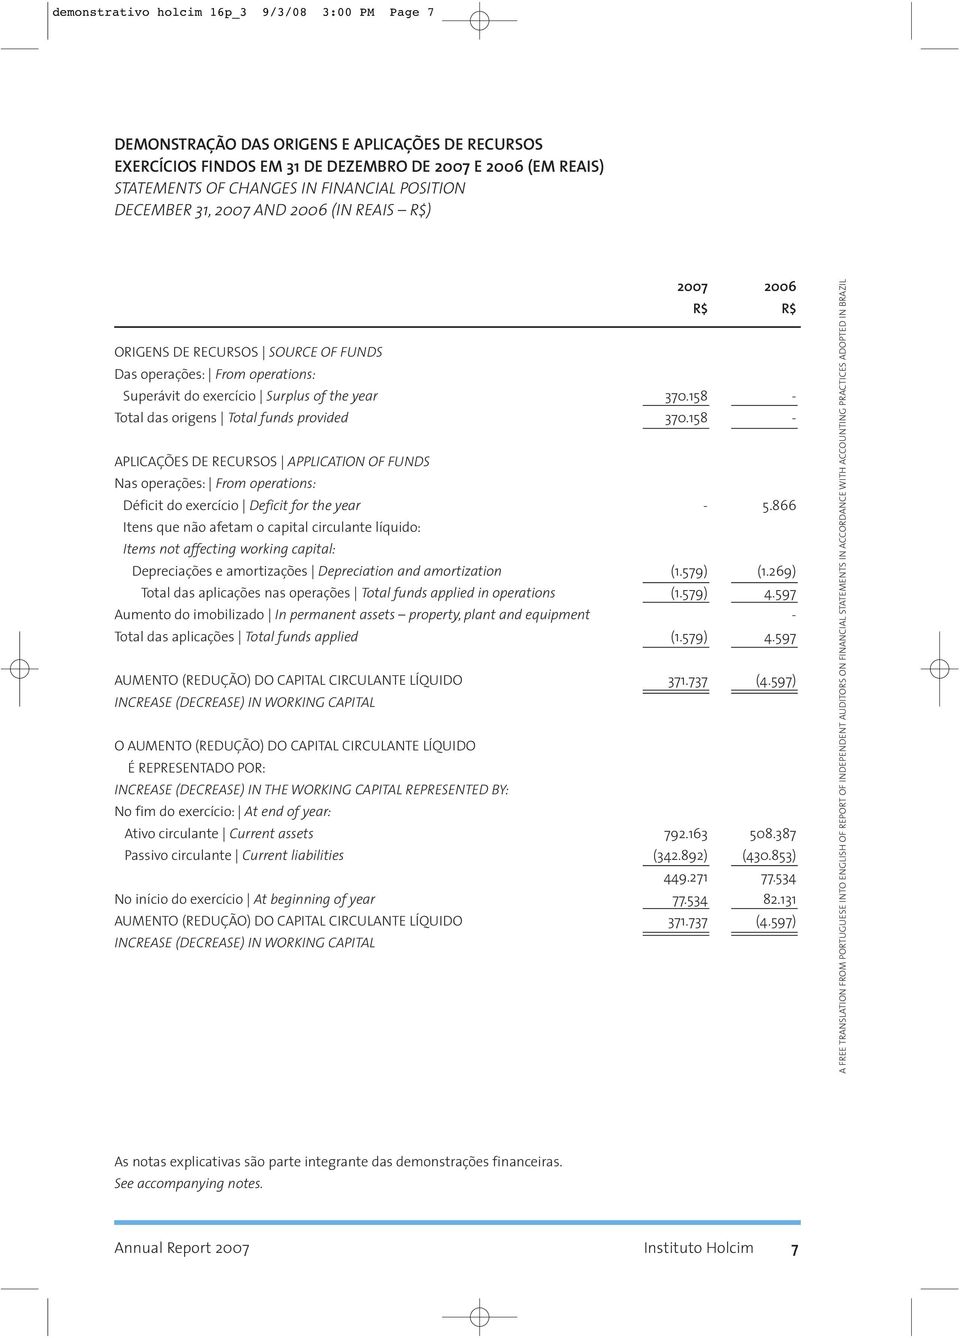 158 - Total das origens Total funds provided 370.158 - APLICAÇÕES DE RECURSOS APPLICATION OF FUNDS Nas operações: From operations: Déficit do exercício Deficit for the year - 5.